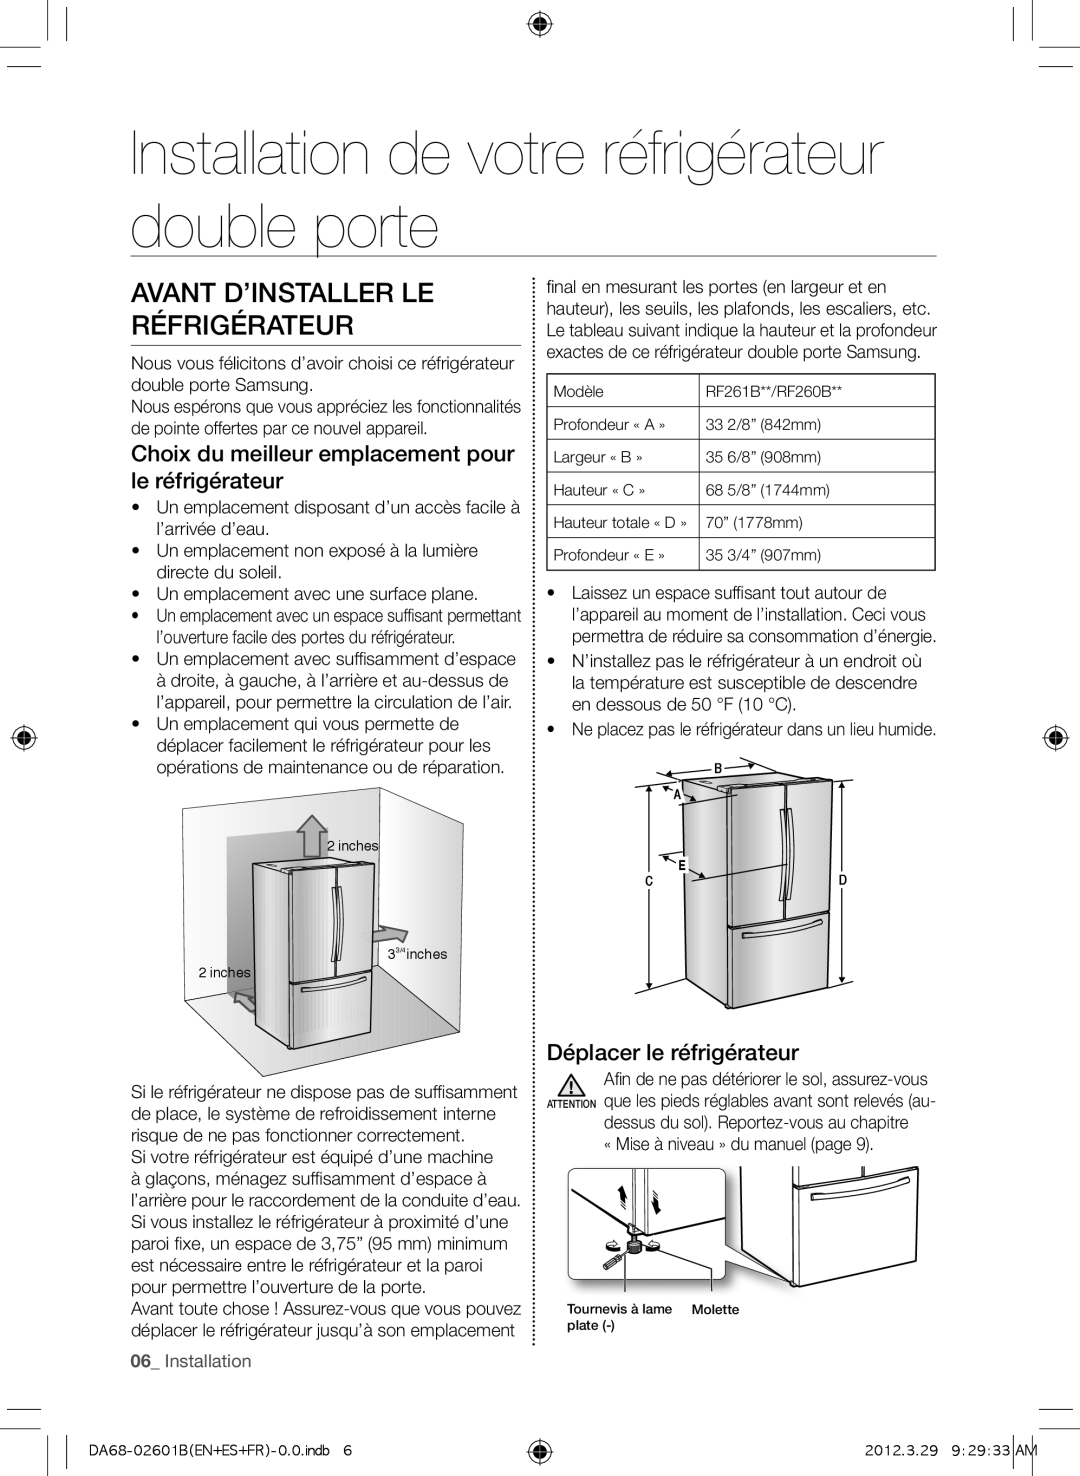 Samsung RF260BEAEWW Installation de votre réfrigérateur double porte, Avant d’installer le réfrigérateur, 06_ Installation 